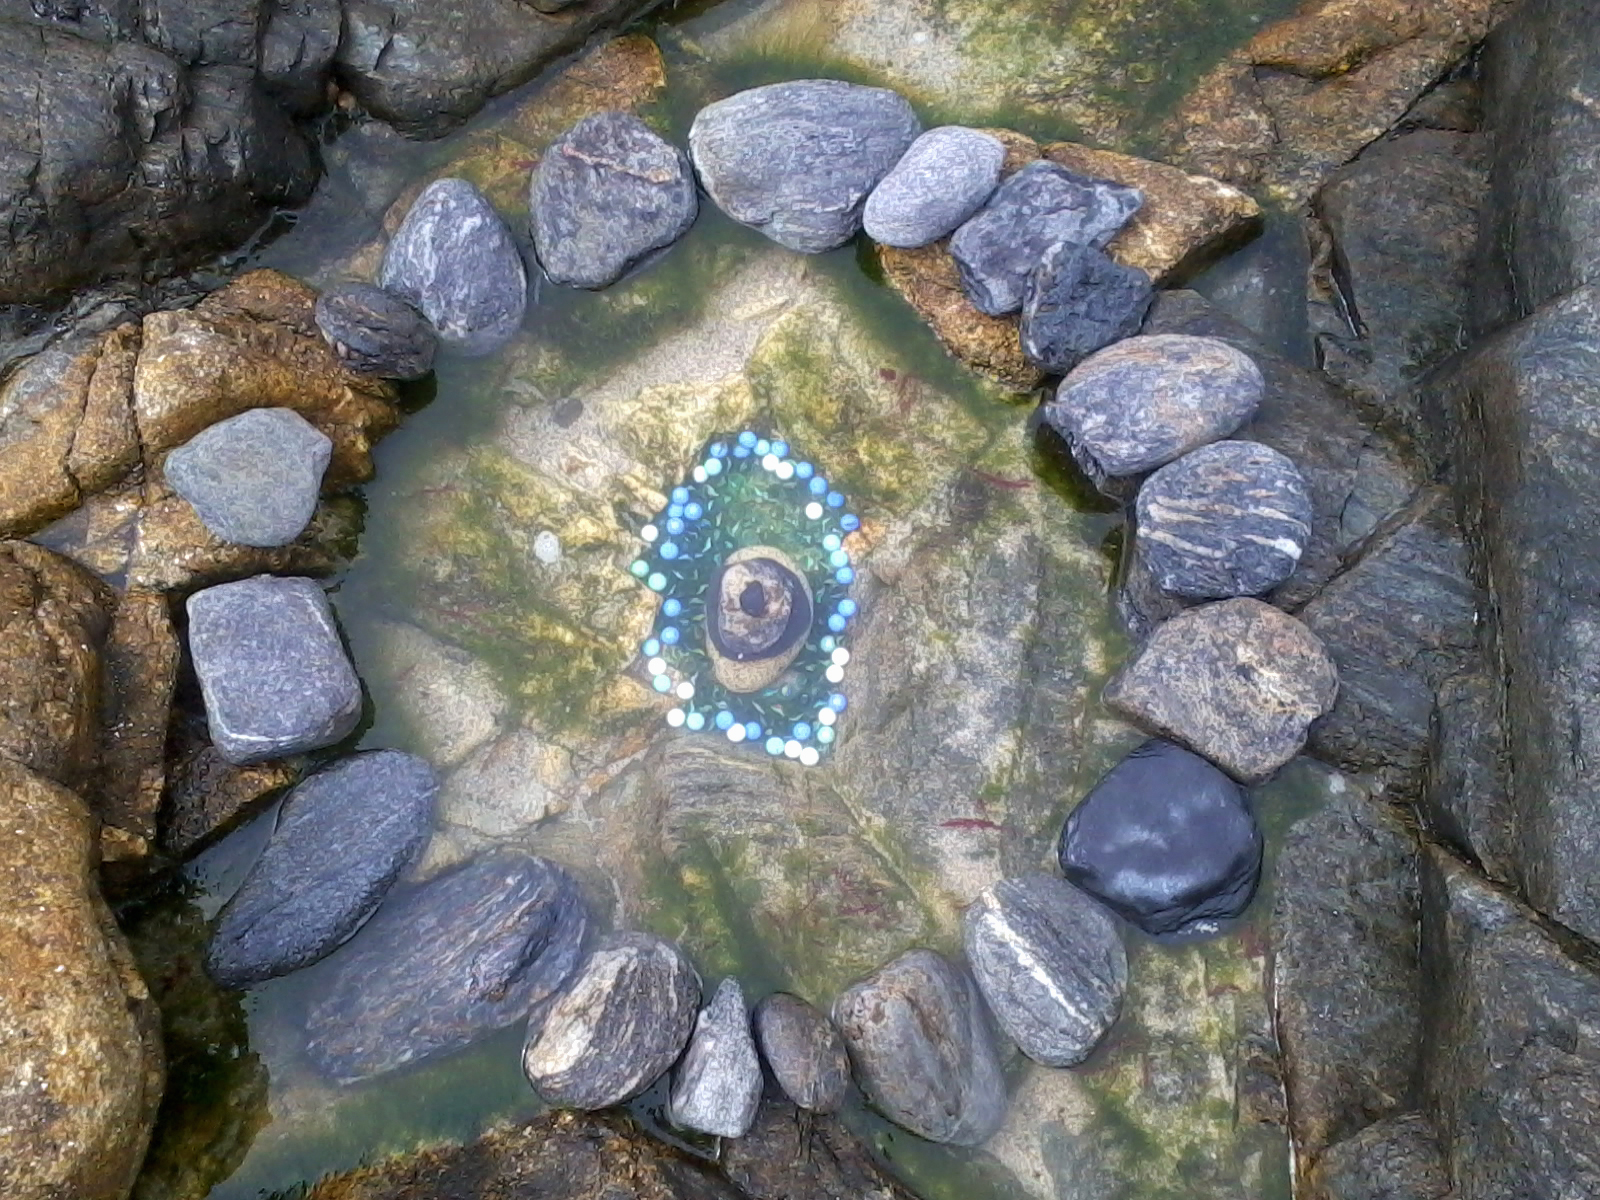 Intervención con piedras y canicas en la playa, en Faro Lariño.